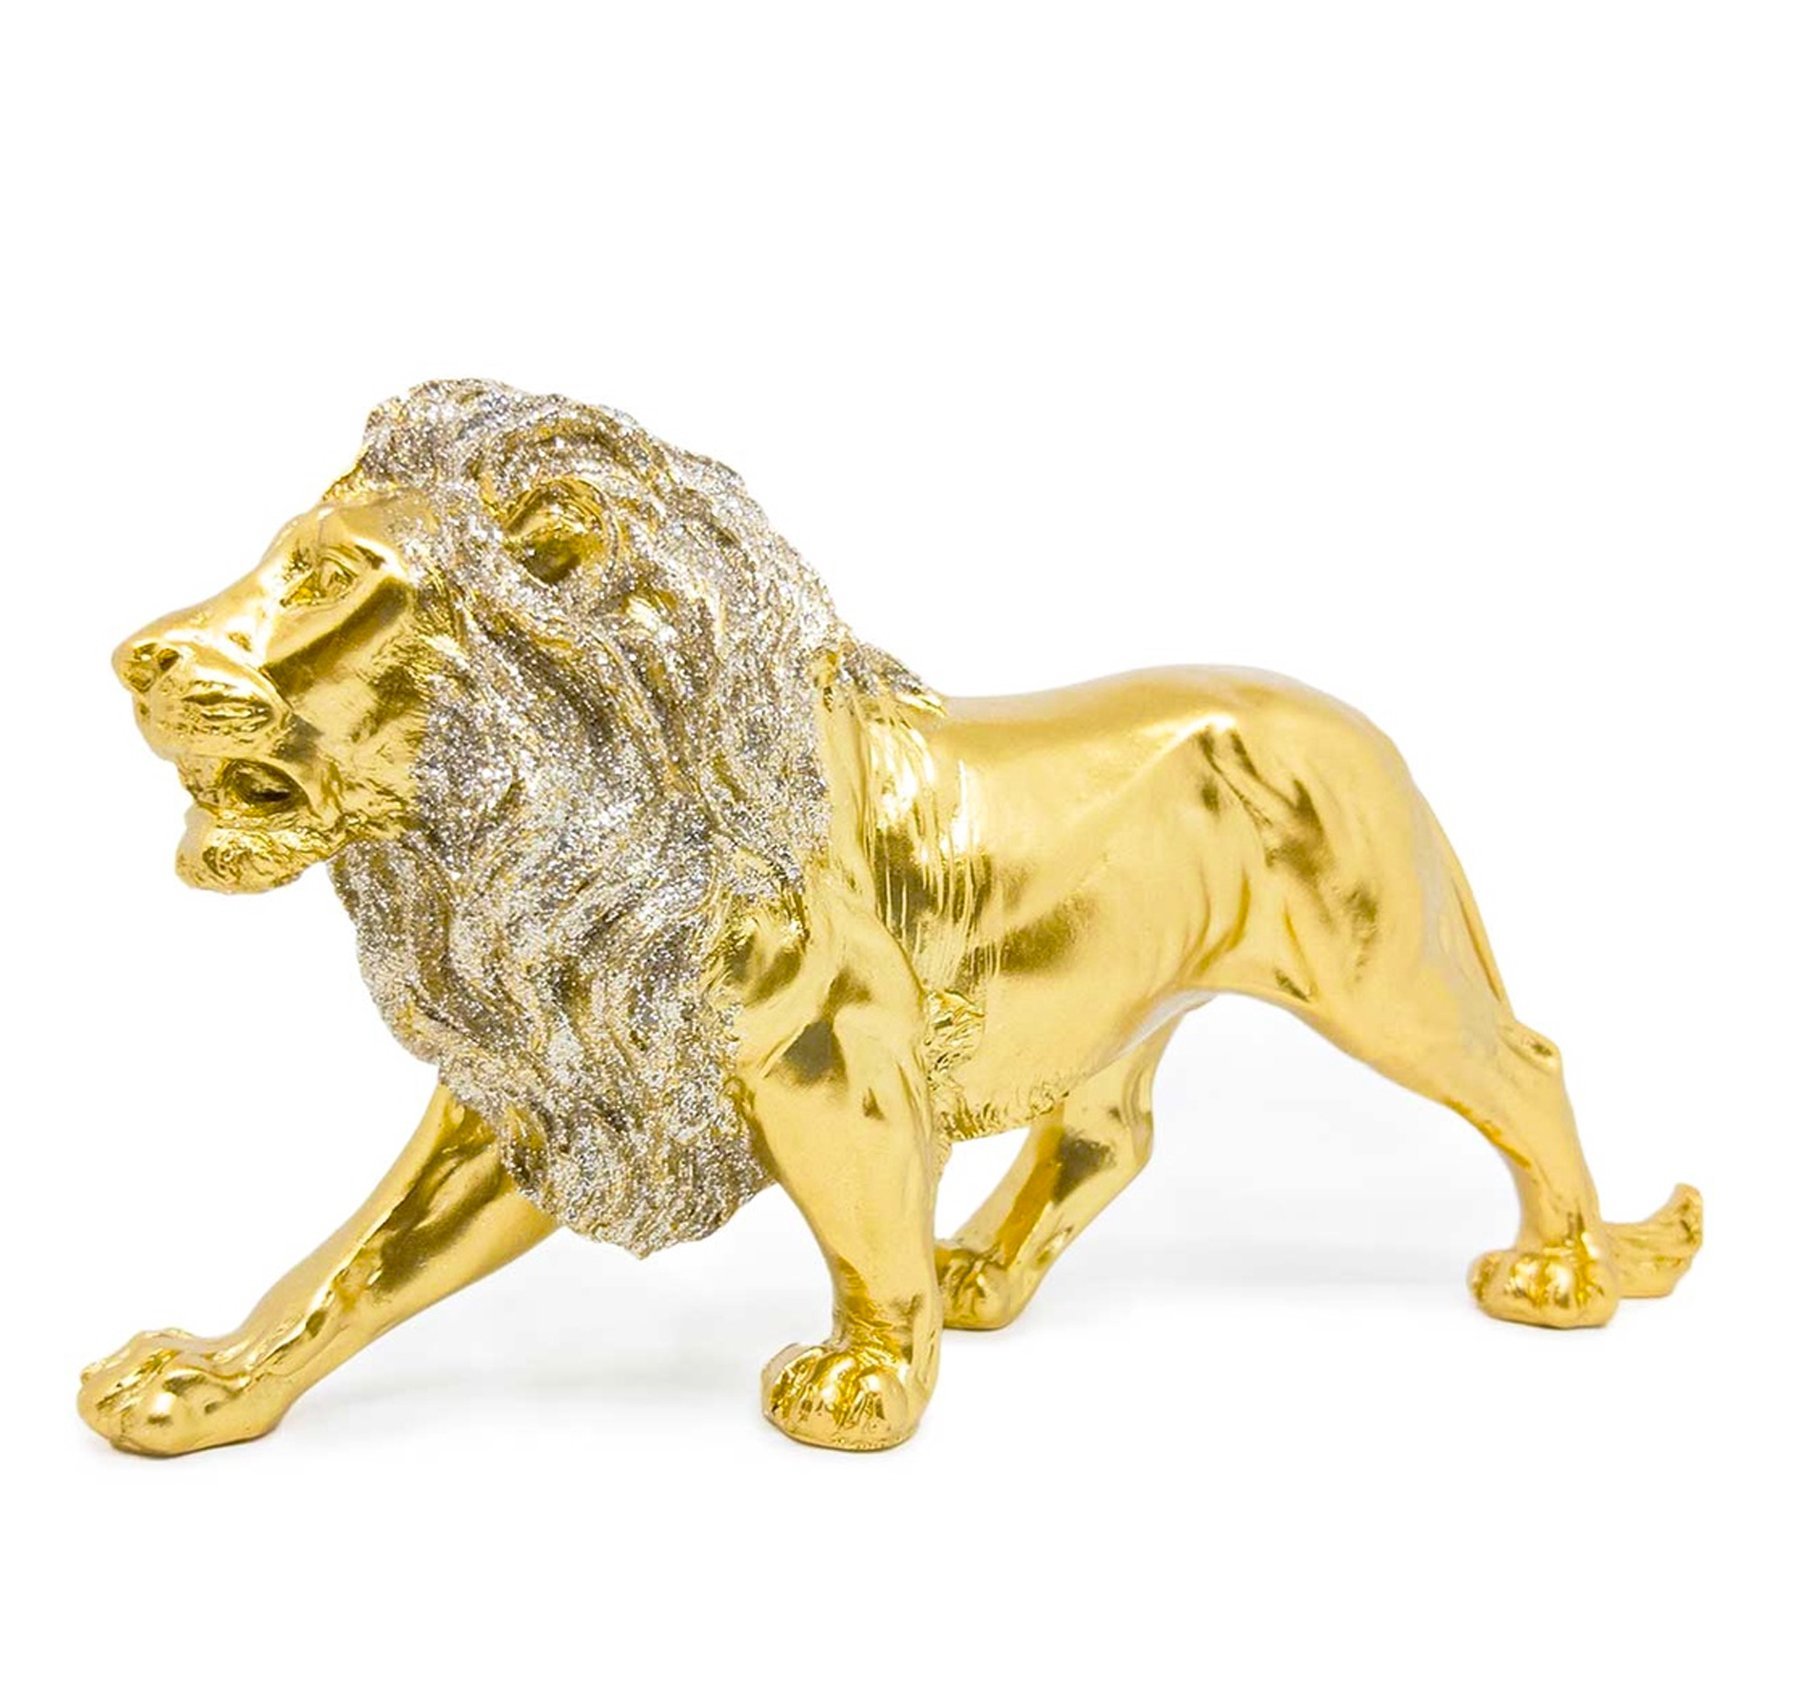 Estatua Enfeite de Resina Leão Dourado Brilhante 21cm